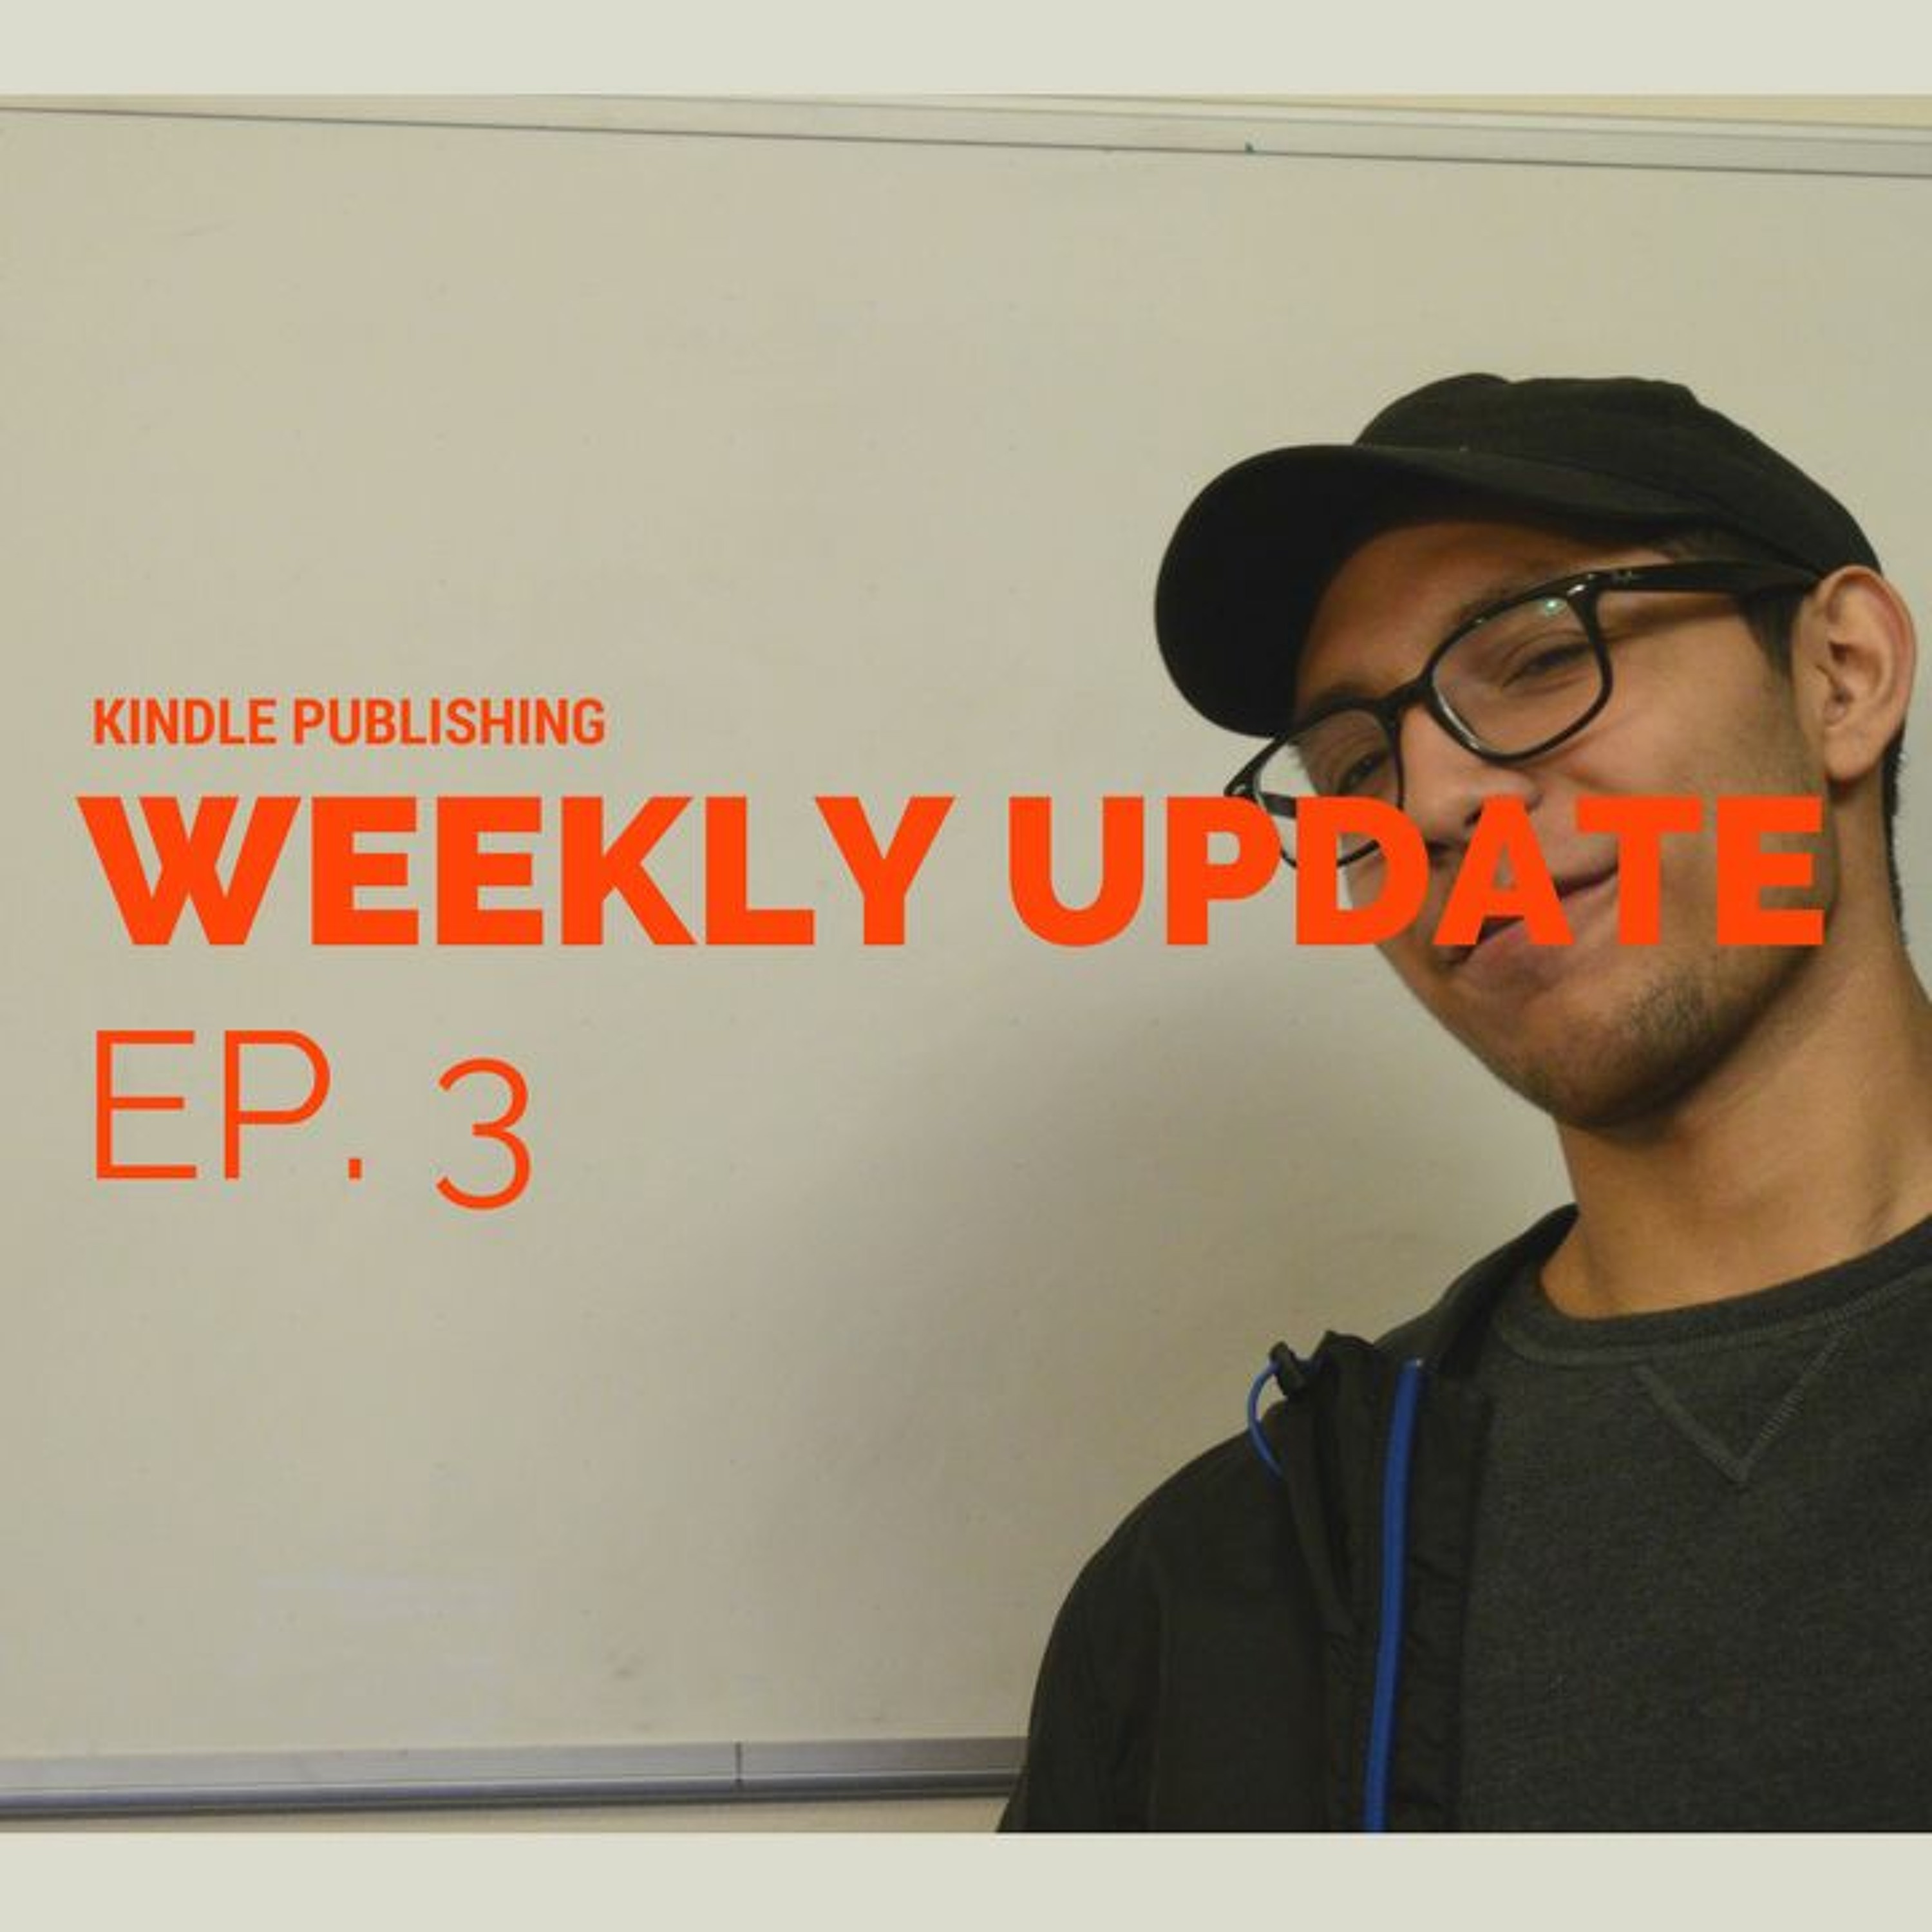 Kindle Publishing--Weekly Update Ep. 3